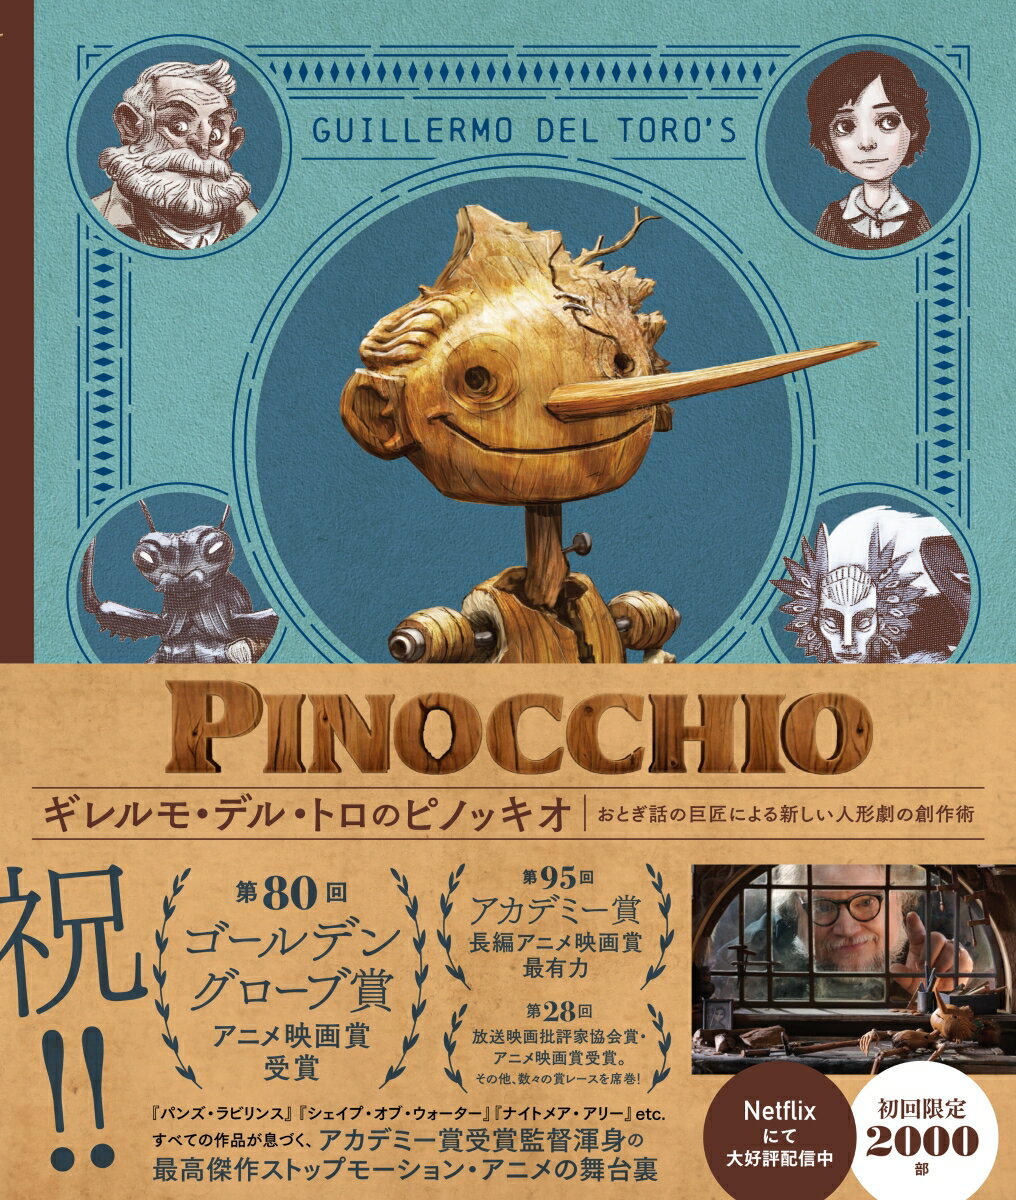 『シェイプ・オブ・ウォーター』（２０１７）でアカデミー賞の監督賞と作品賞をＷ受賞したギレルモ・デル・トロがイタリアの作家カルロ・コッローディの古典的児童文学『ピノッキオの冒険』を大胆にアレンジ。昔ながらのアニメーションの技術＆実写映画の撮影手法が駆使された本作は、我々の知るストップモーション・アニメの懐かしさとともに、パペットたちの息づかいまで感じられるまったく新しい作品に仕上がっている。本書は、監督の初期アイデアから、キャラクターデザイン、人形作り、そして緻密なアニメーション制作を経て、『ピノッキオ』が完成するまでを、数々の美しい写真やコンセプトアートなどとともに辿る１冊だ。さぁ、究極の人形劇の舞台裏を覗いてみようー。